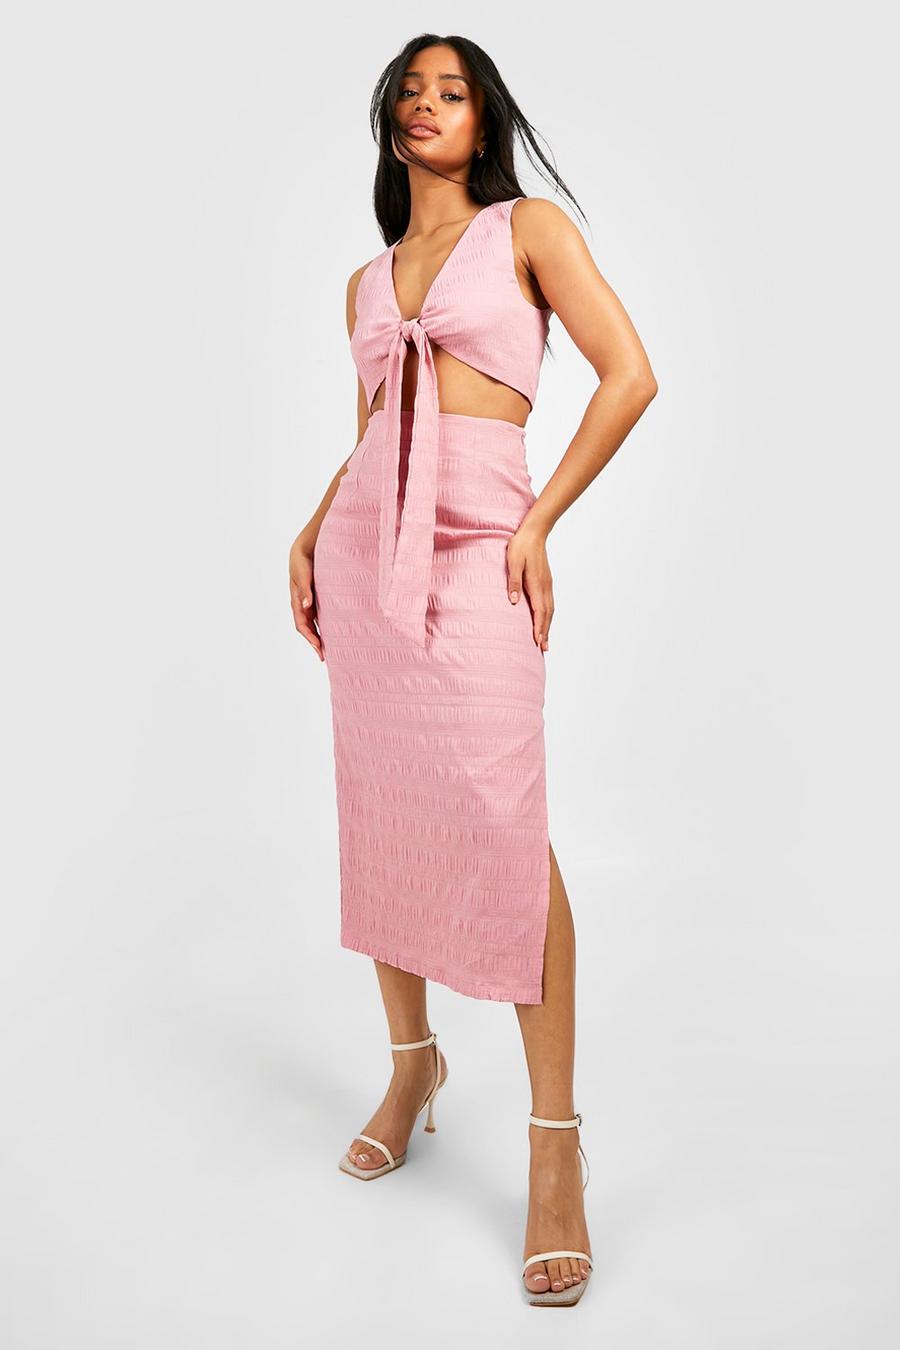 Candy pink Textured Midaxi Skirt